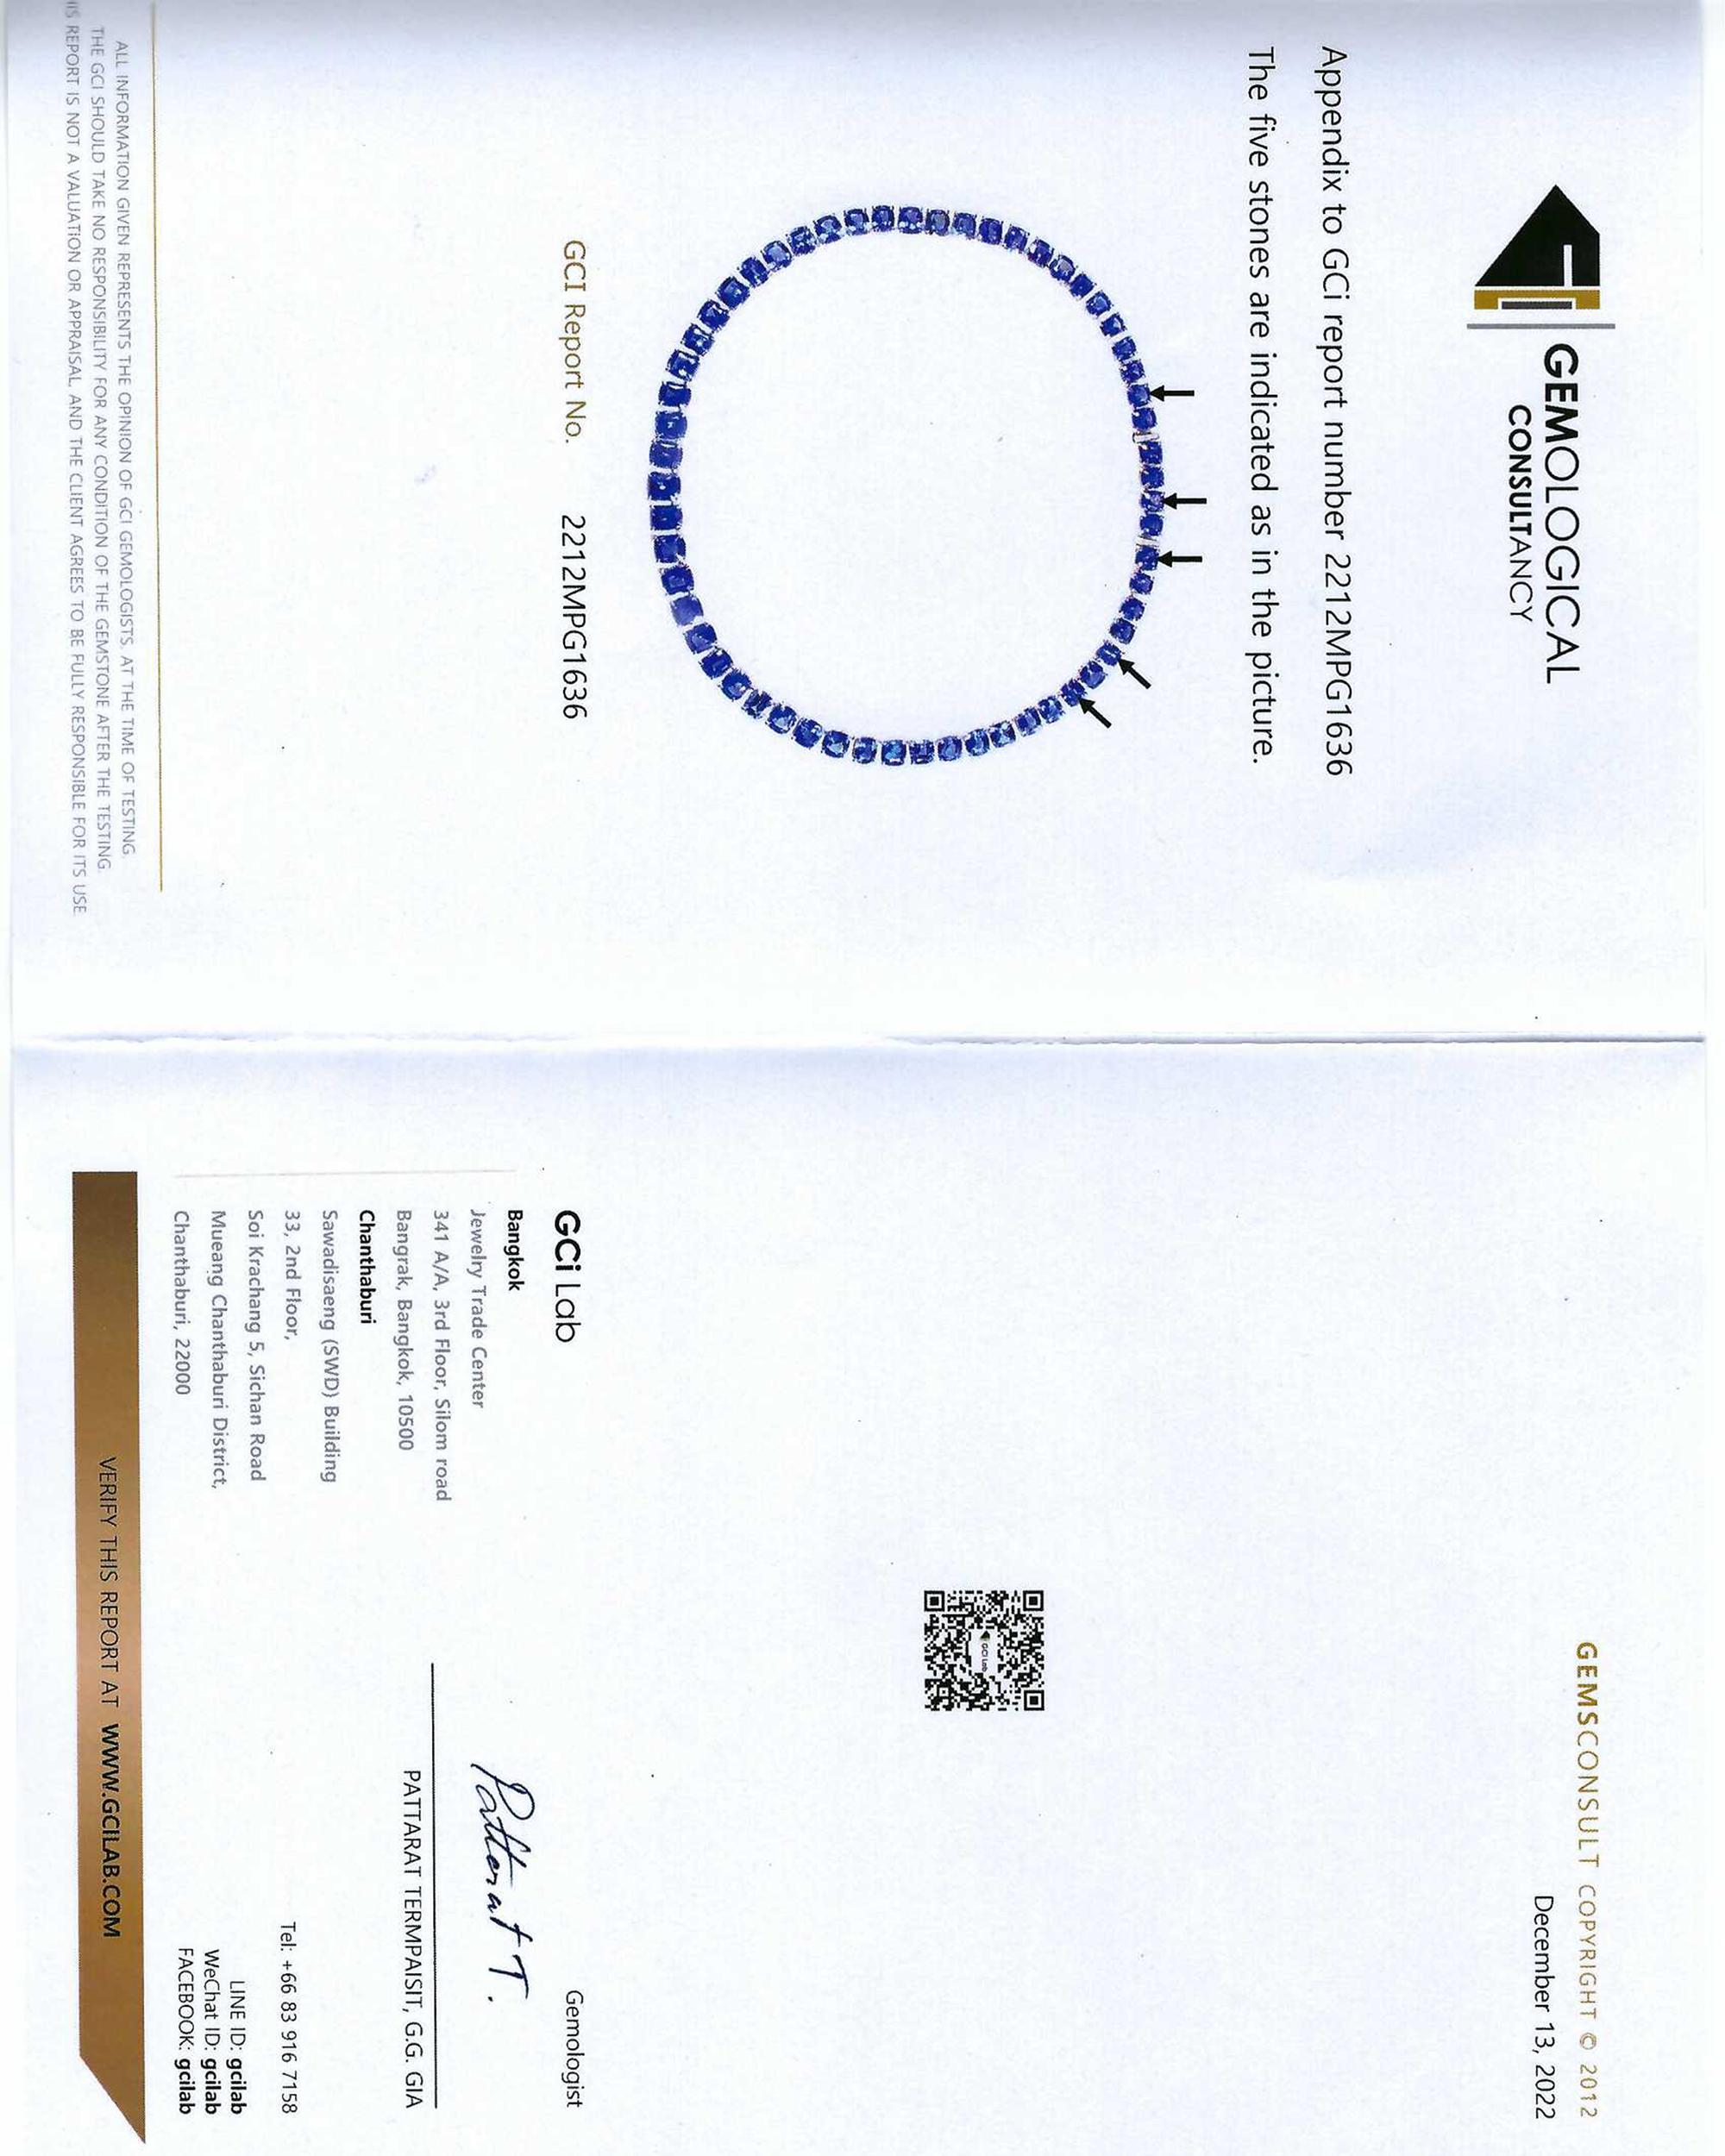 gci diamond certificate